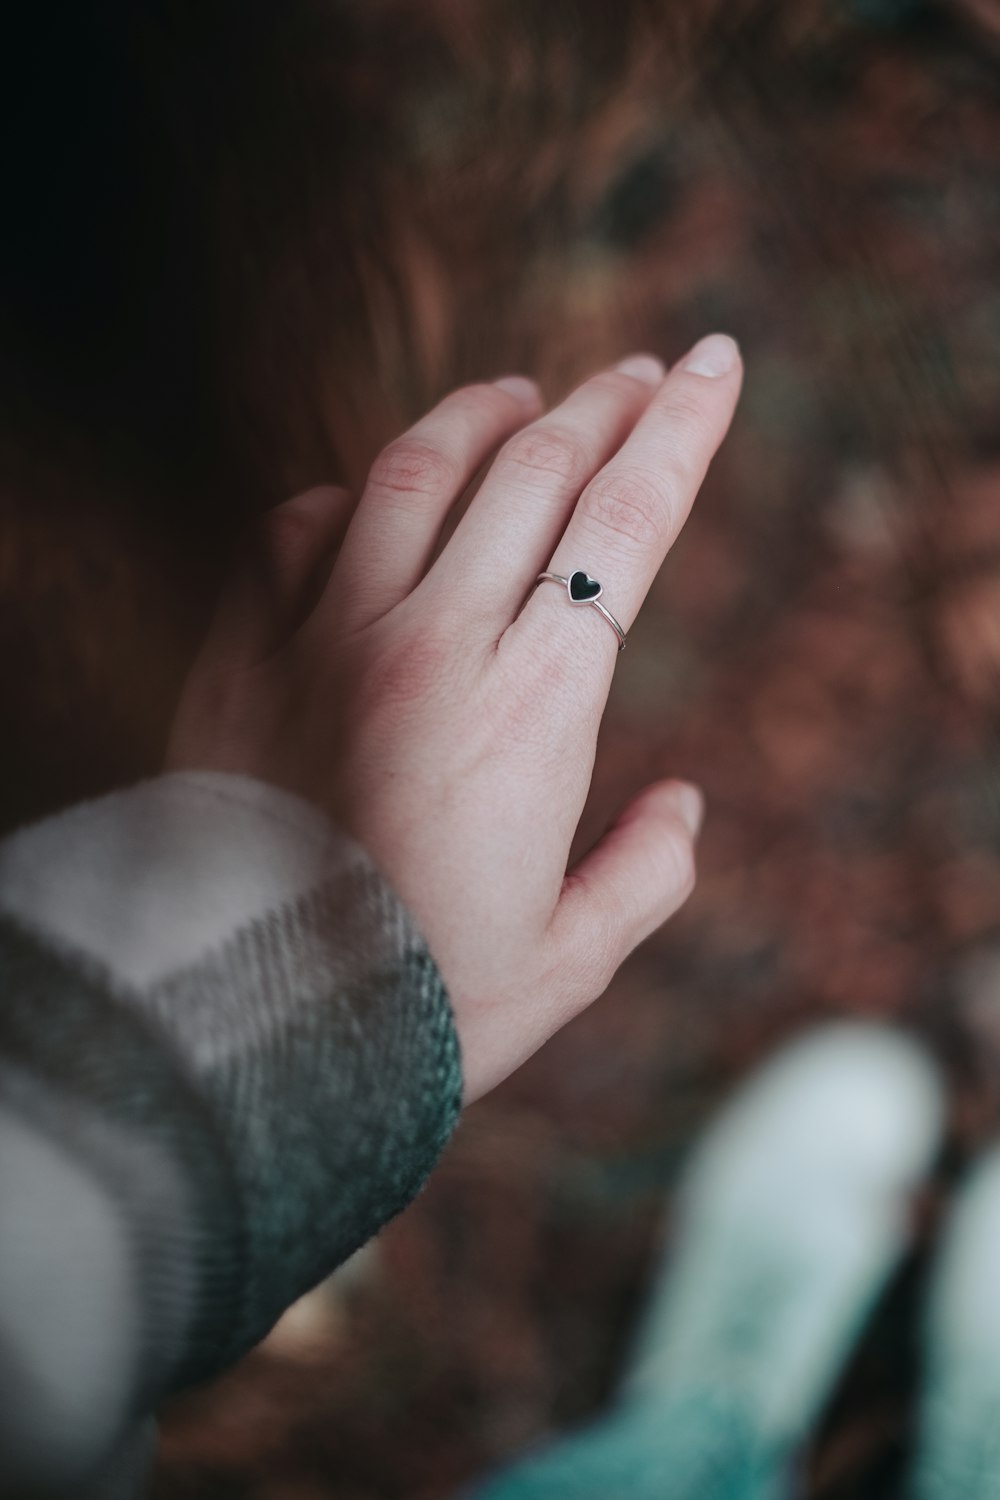 schwarz-weißes kleines Insekt an der Hand der Person